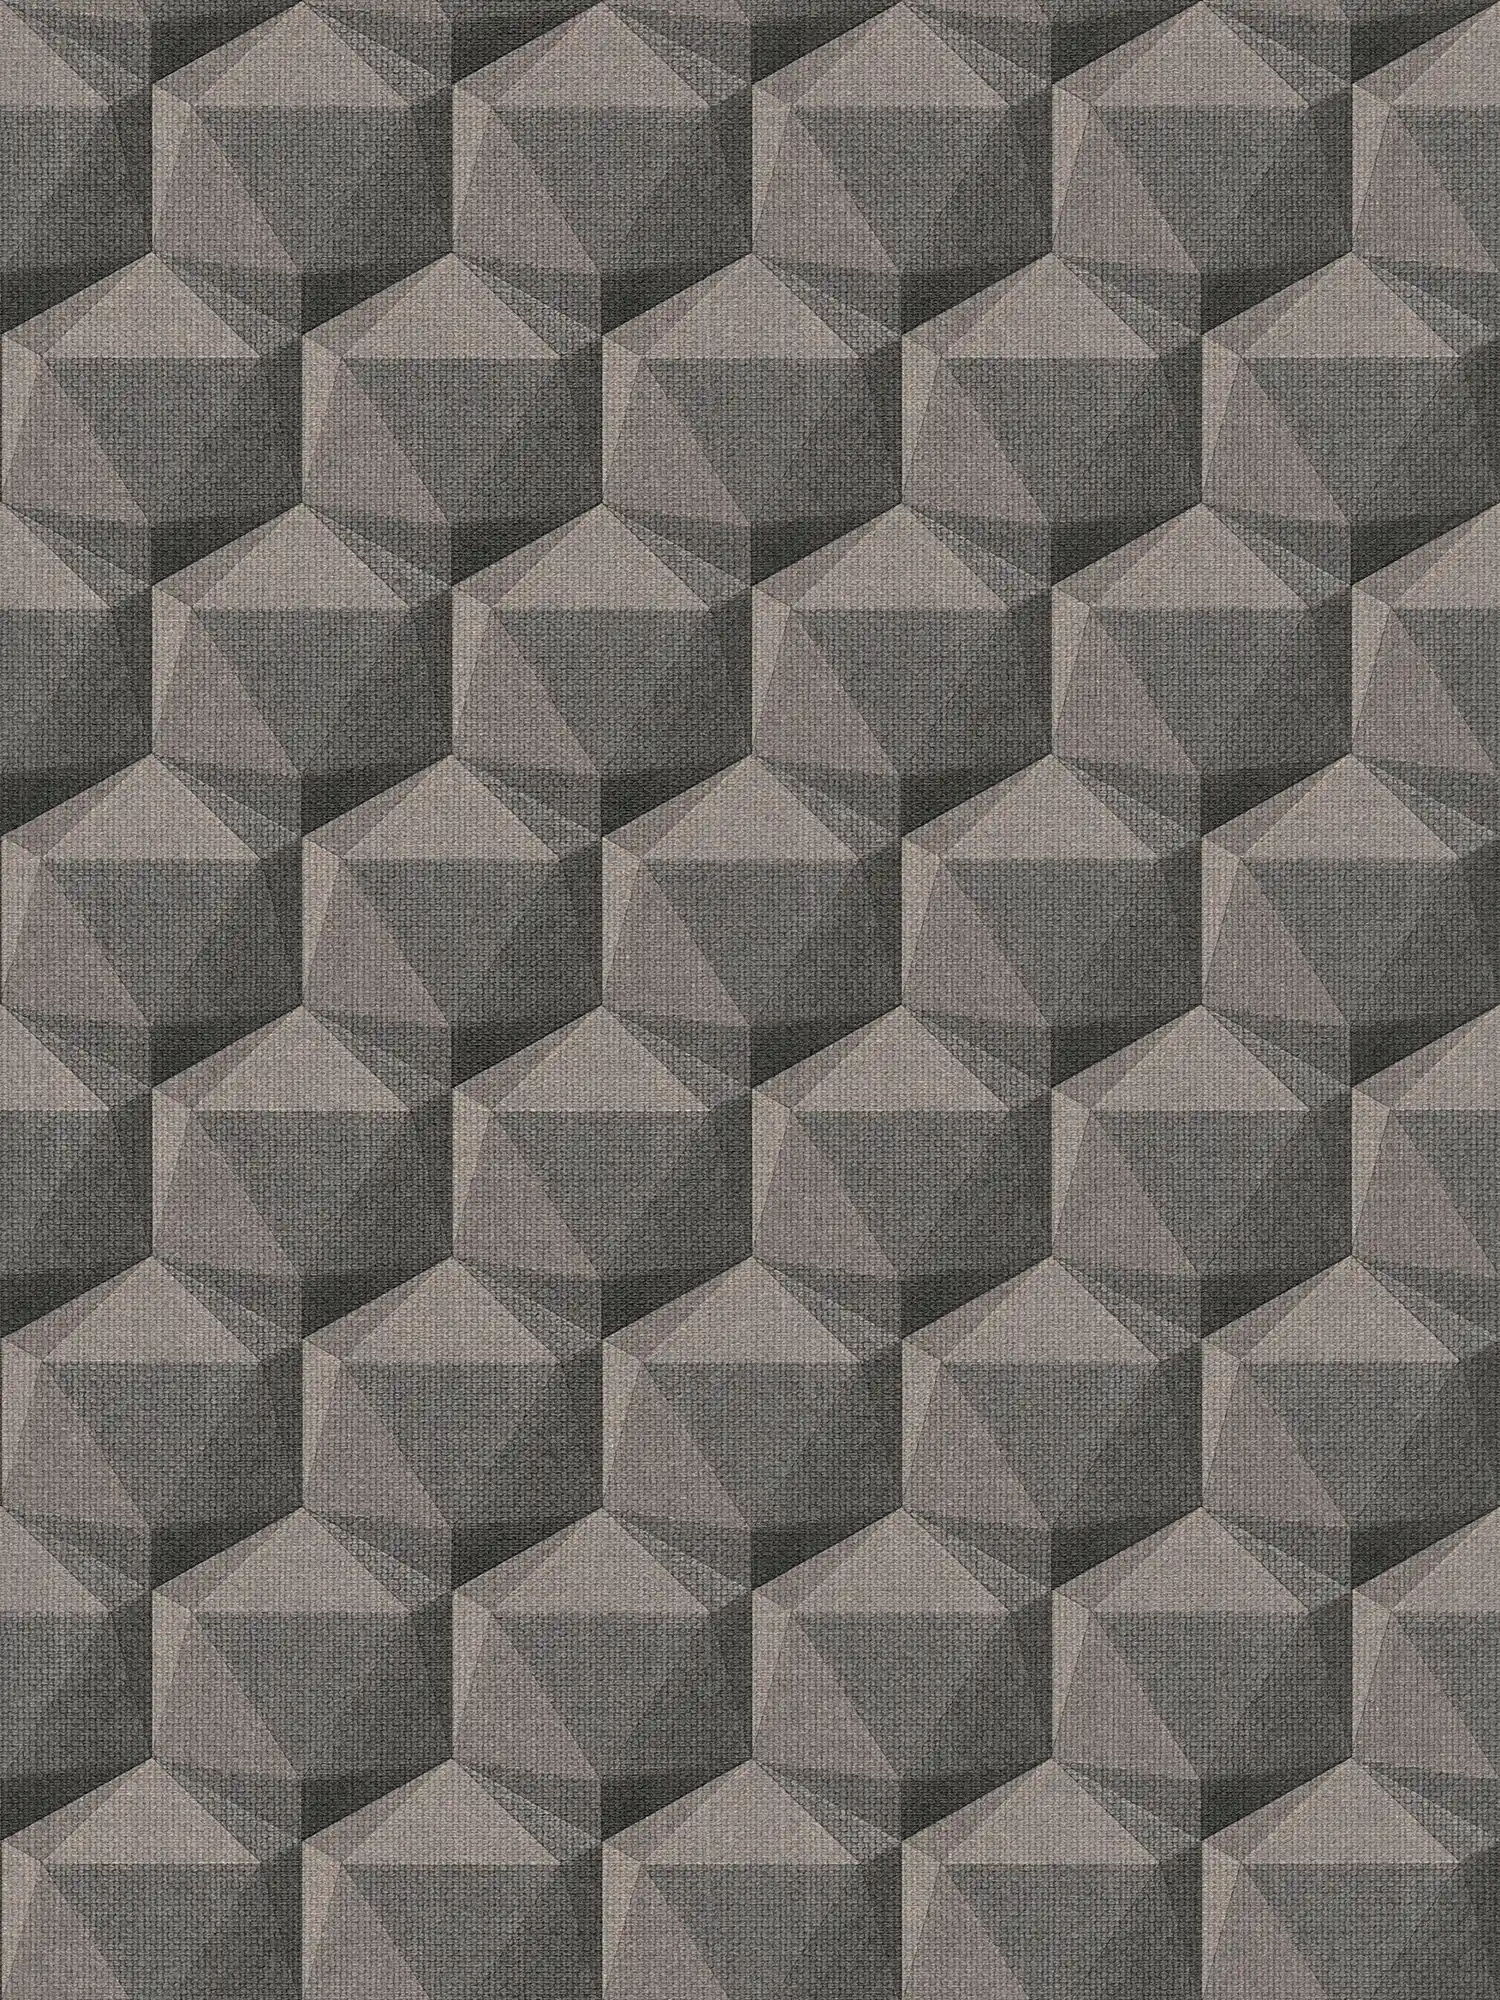 Grafisch behang 3D optiek met polygoonpatroon - grijs, beige, zwart
